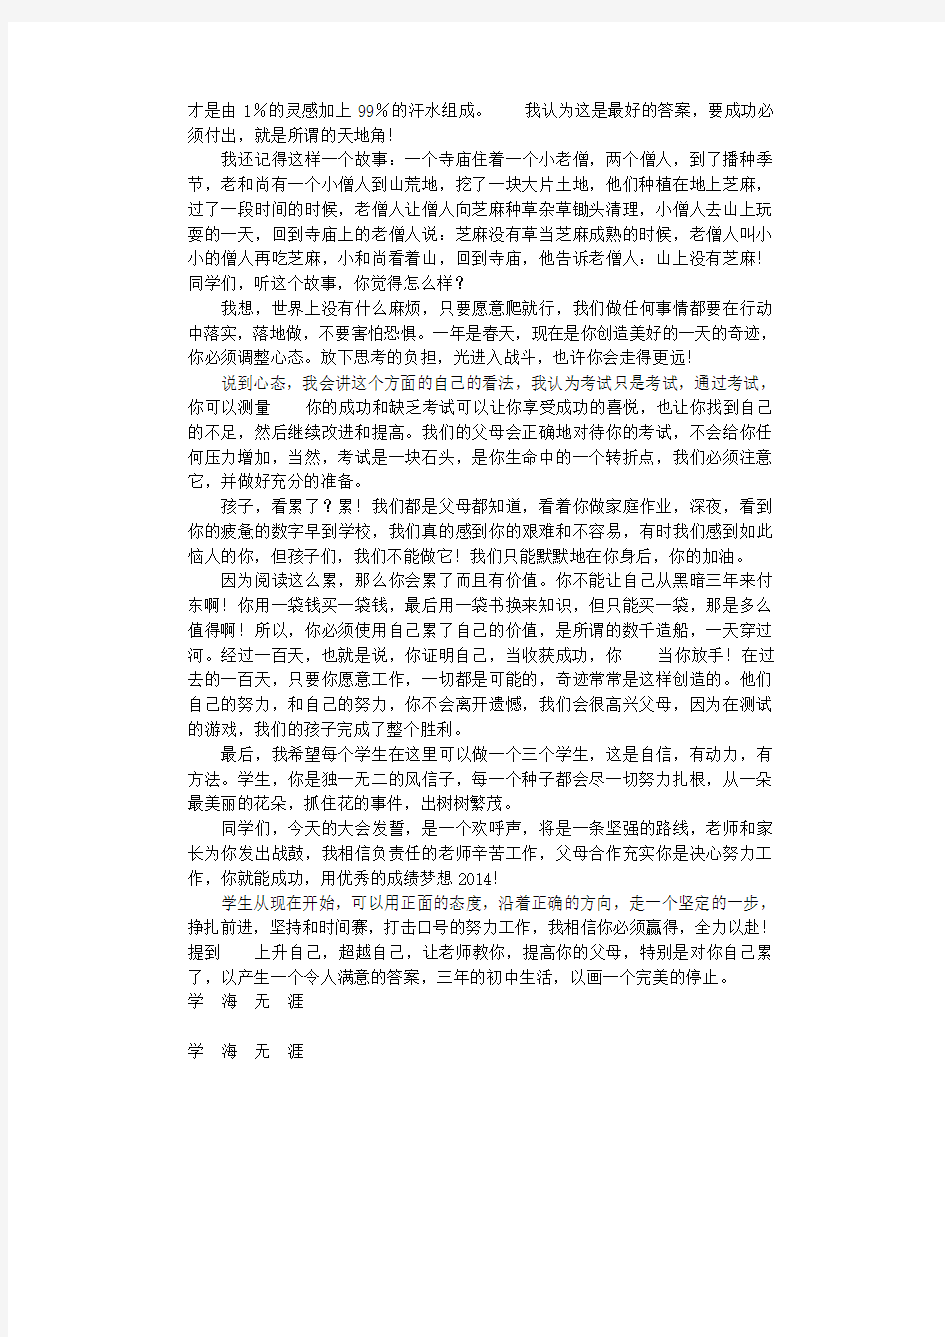 2020年中考百日誓师大会家长代表发言稿.pdf